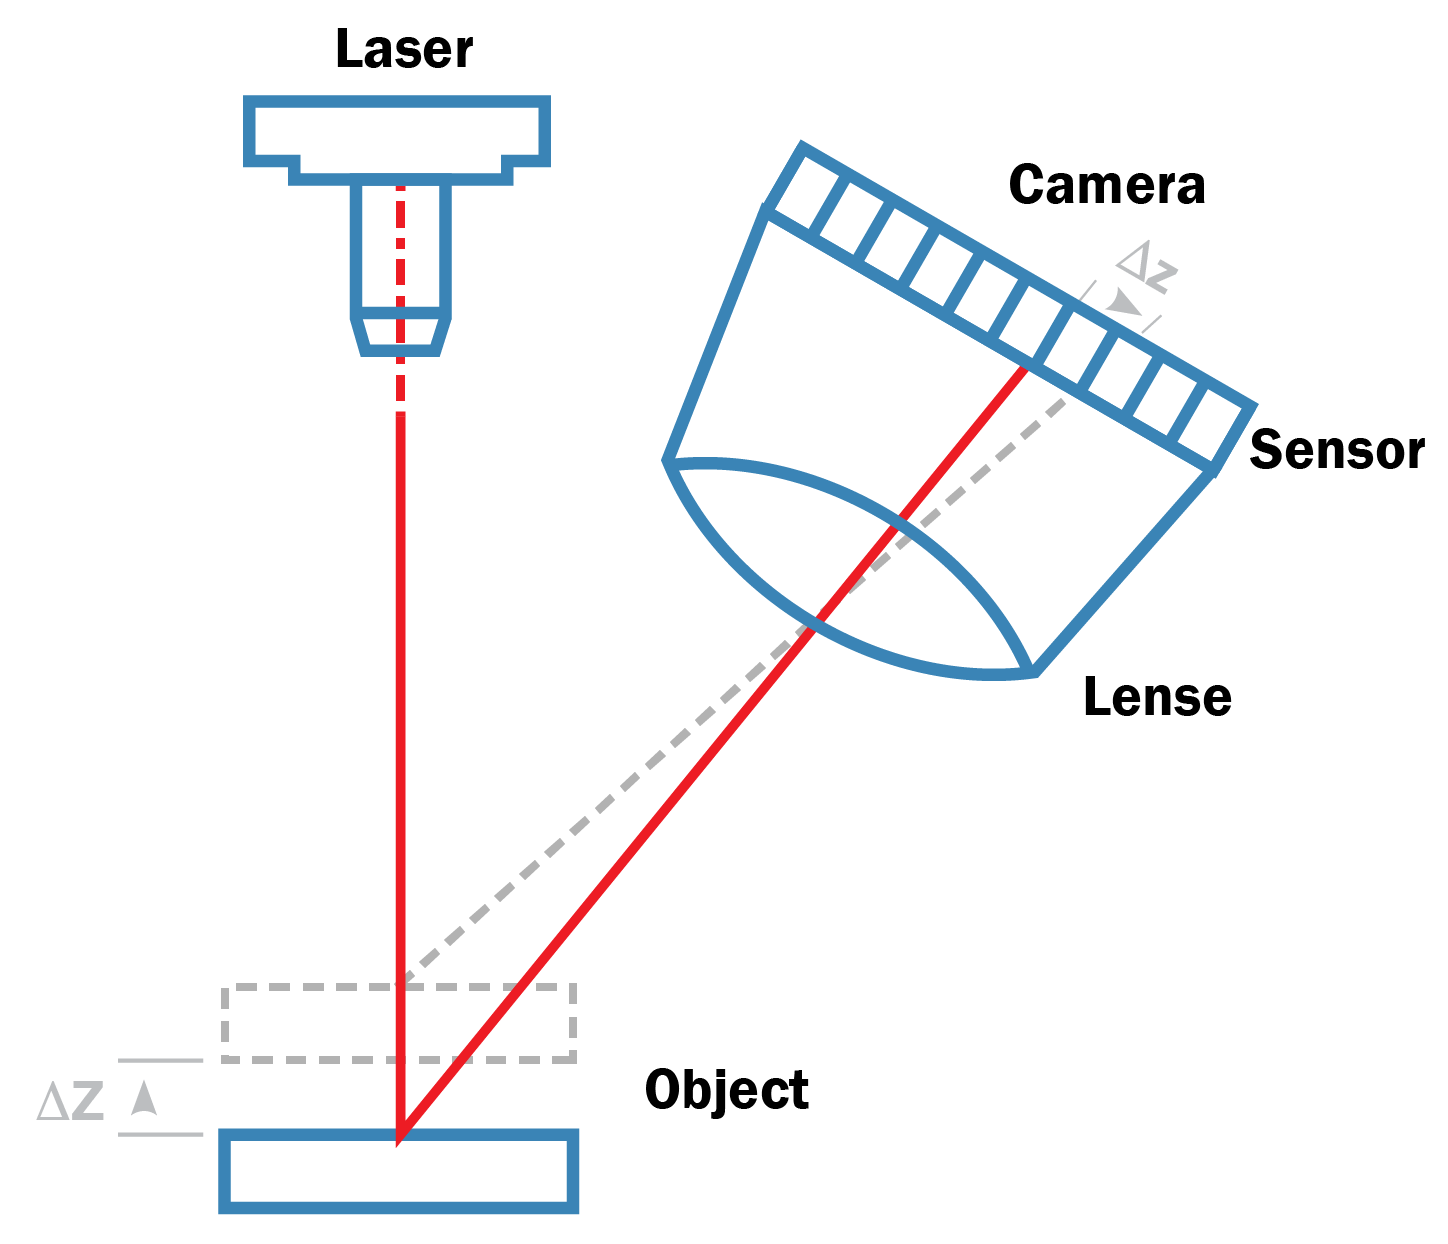 La técnica basada en triángulos ejecuta una forma de triángulo compuesta por el emisor de láser, el reflejo del láser en el objeto y la cámara que captura el reflejo del láser.